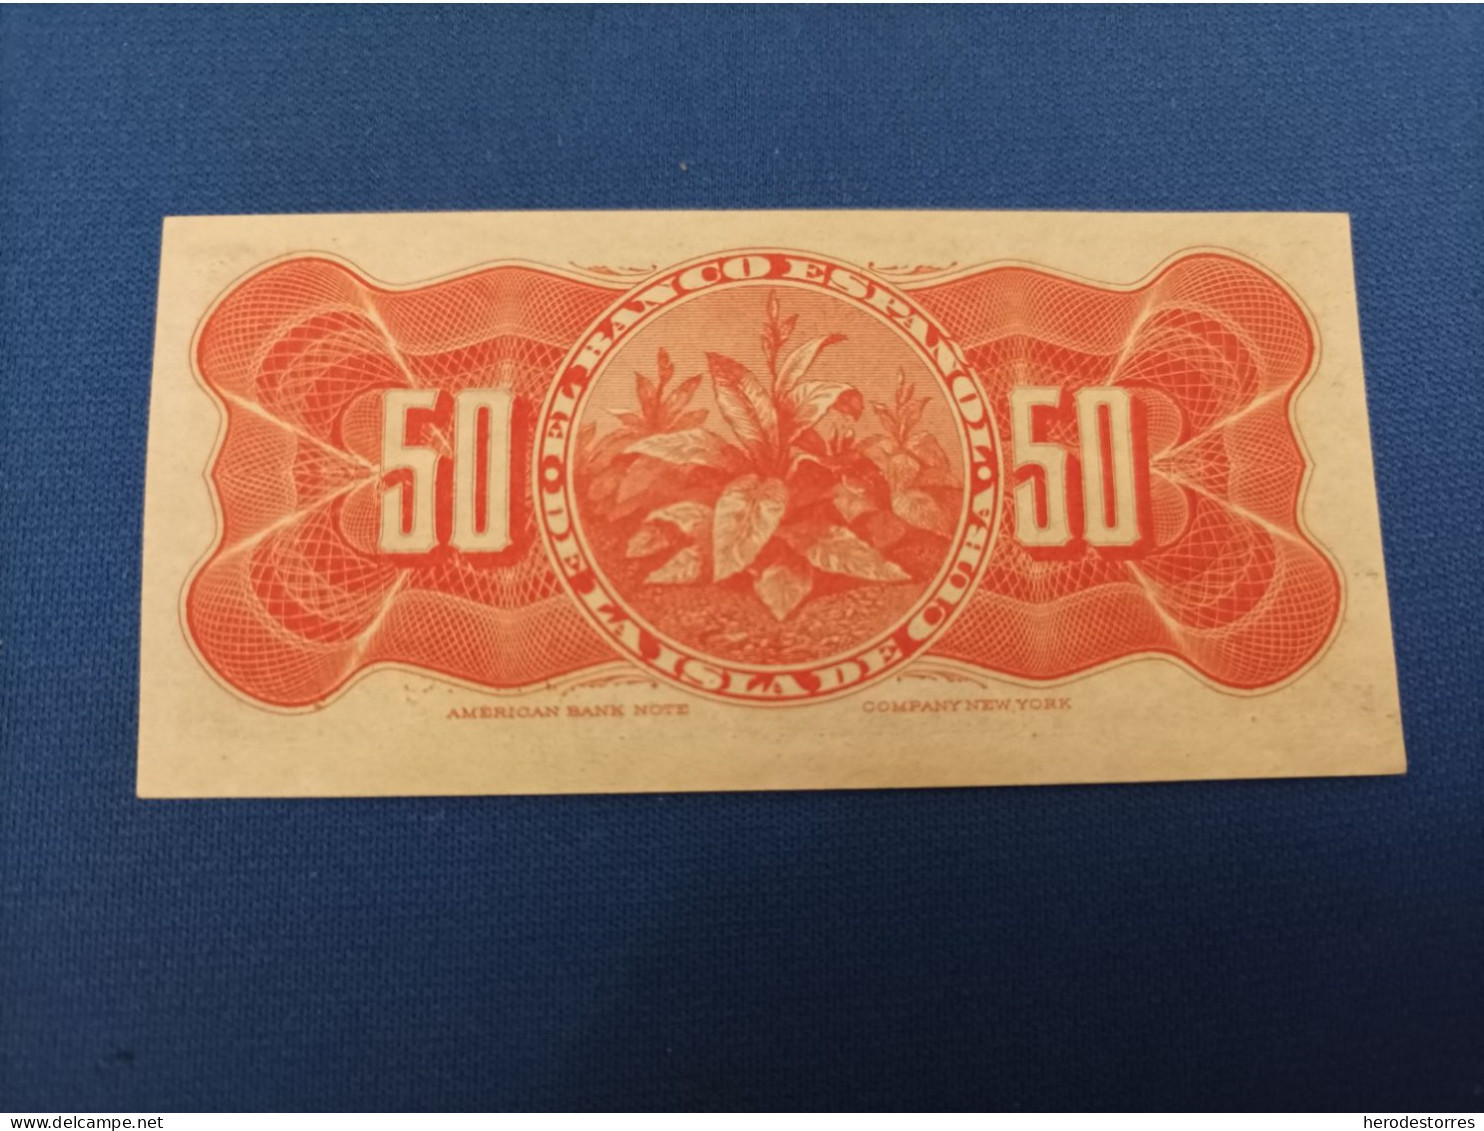 50 Centavos Banco Español, Isla De Cuba, Año 1896, UNC - 50 Peseten